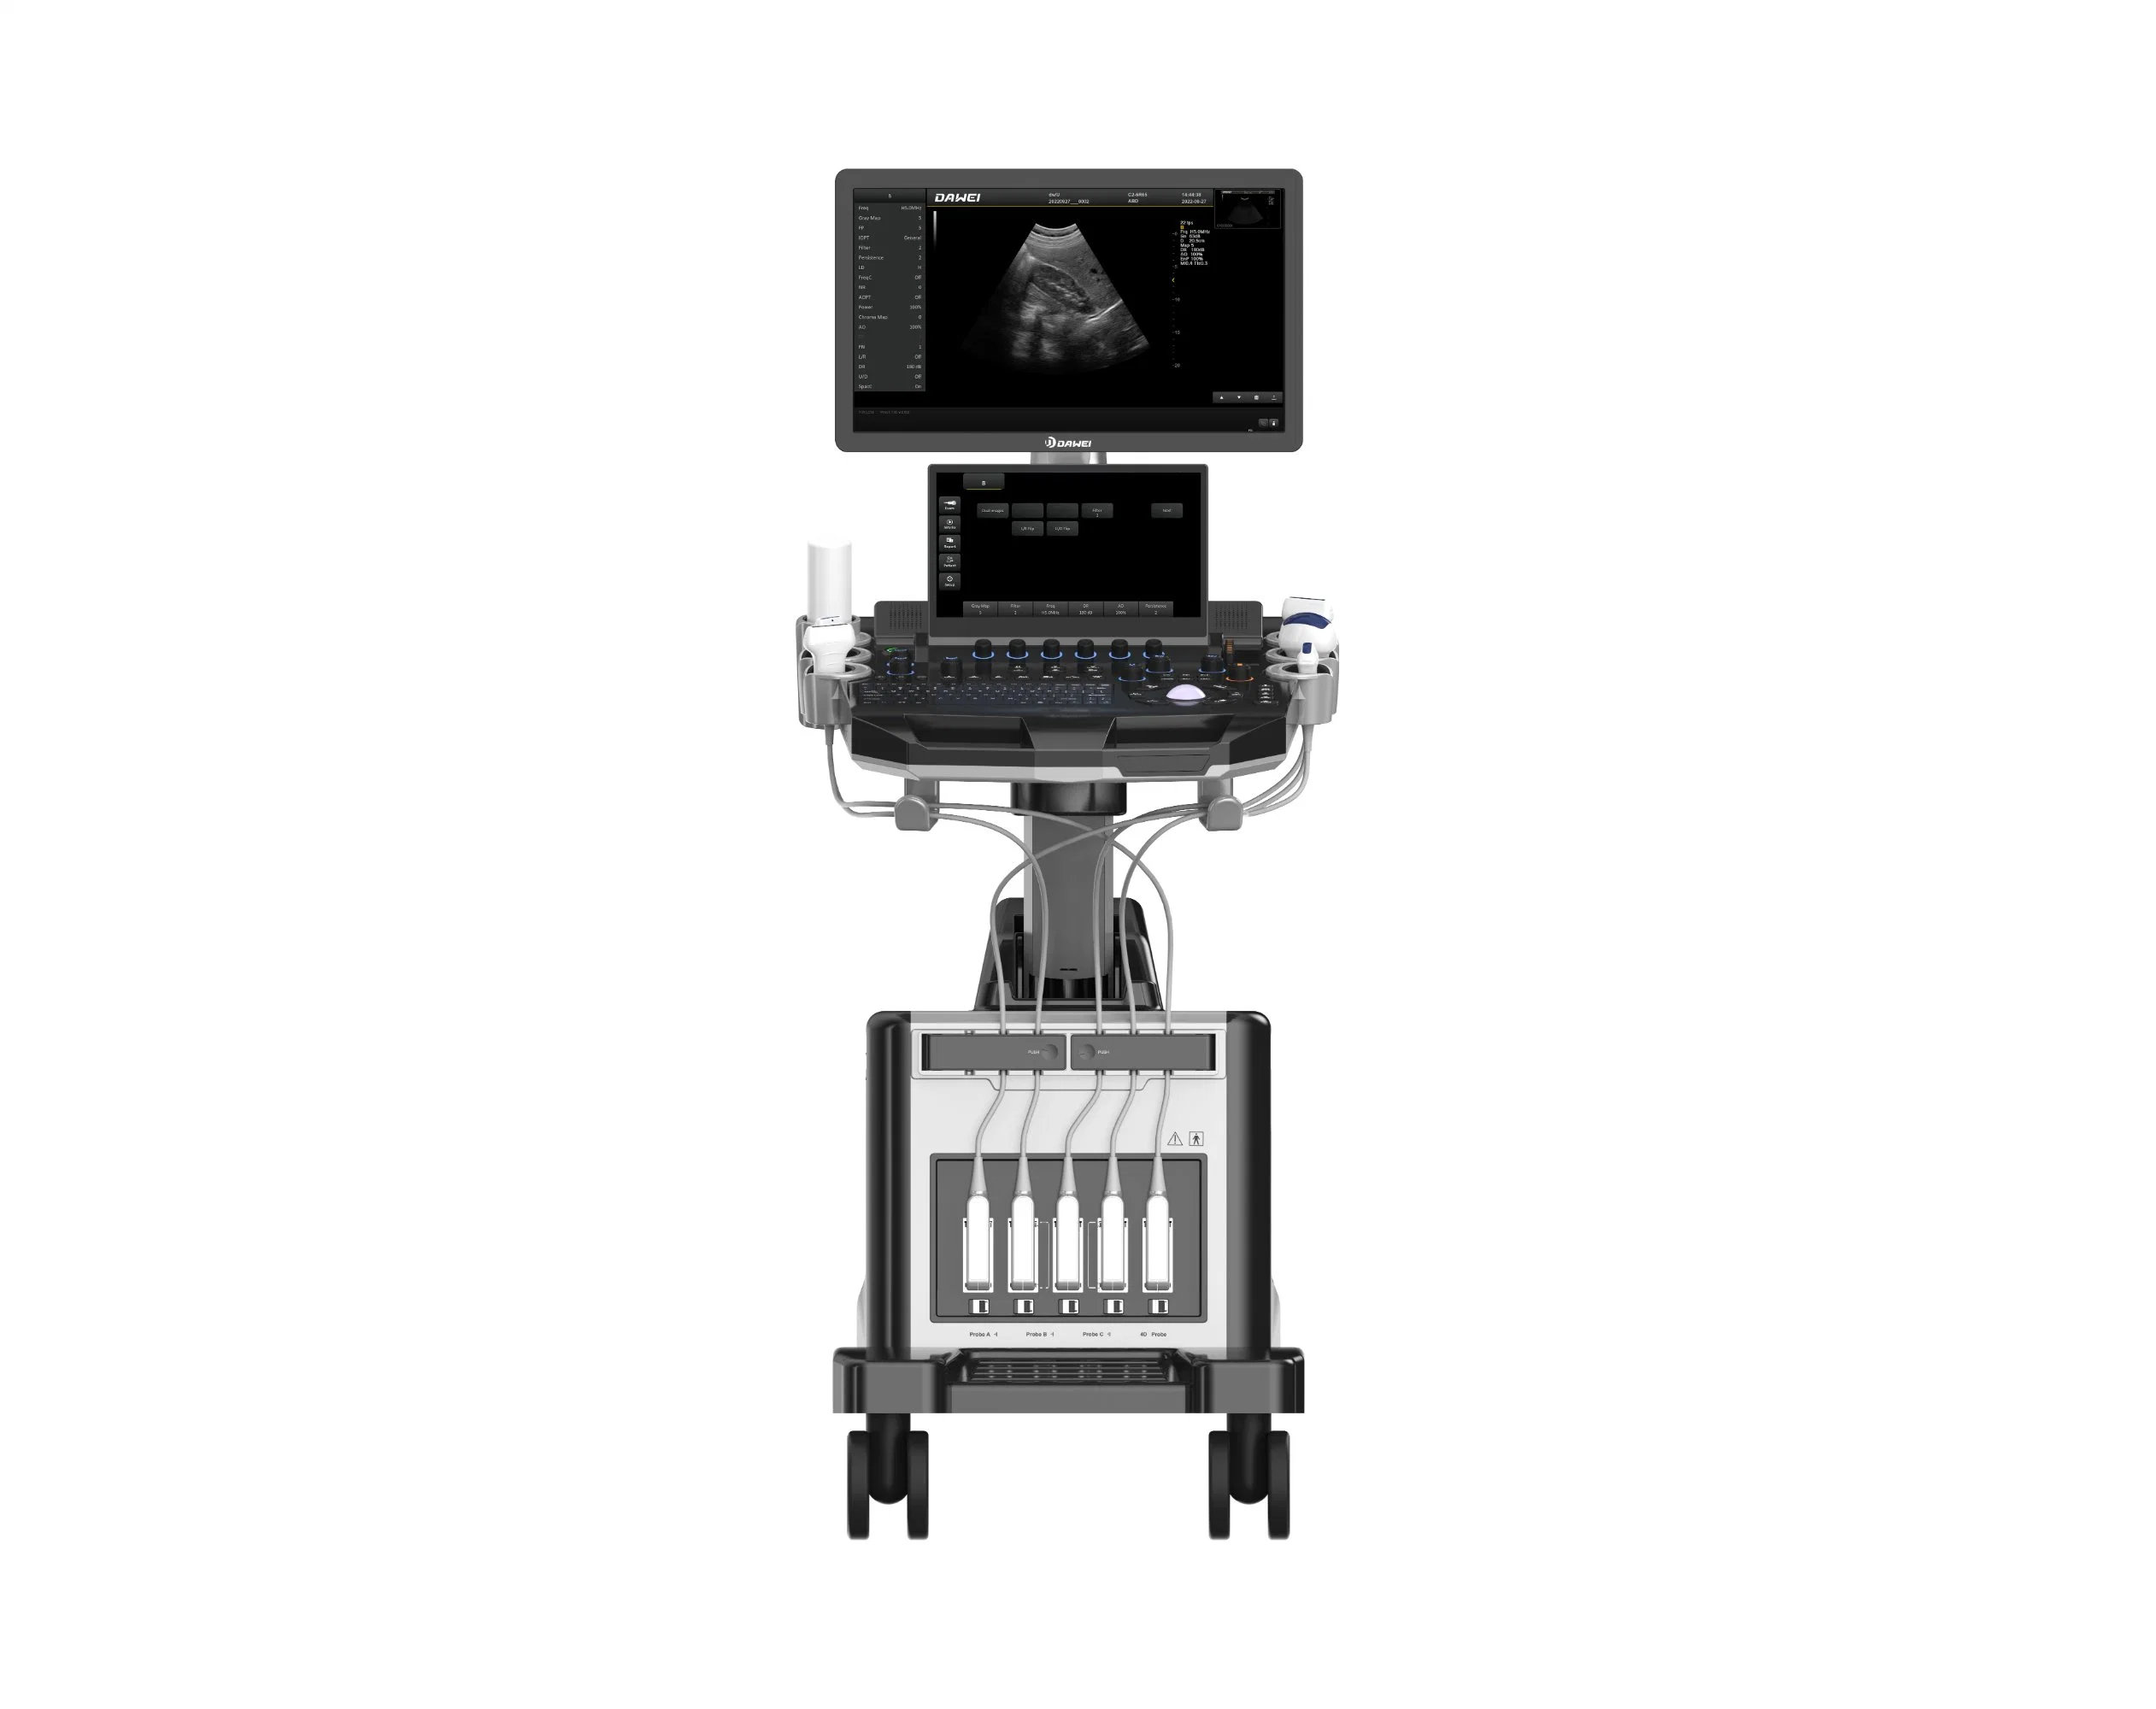 O Dawei promove principalmente o instrumento de diagnóstico ultra-sónico totalmente digital para Obstetrícia e ginecologia